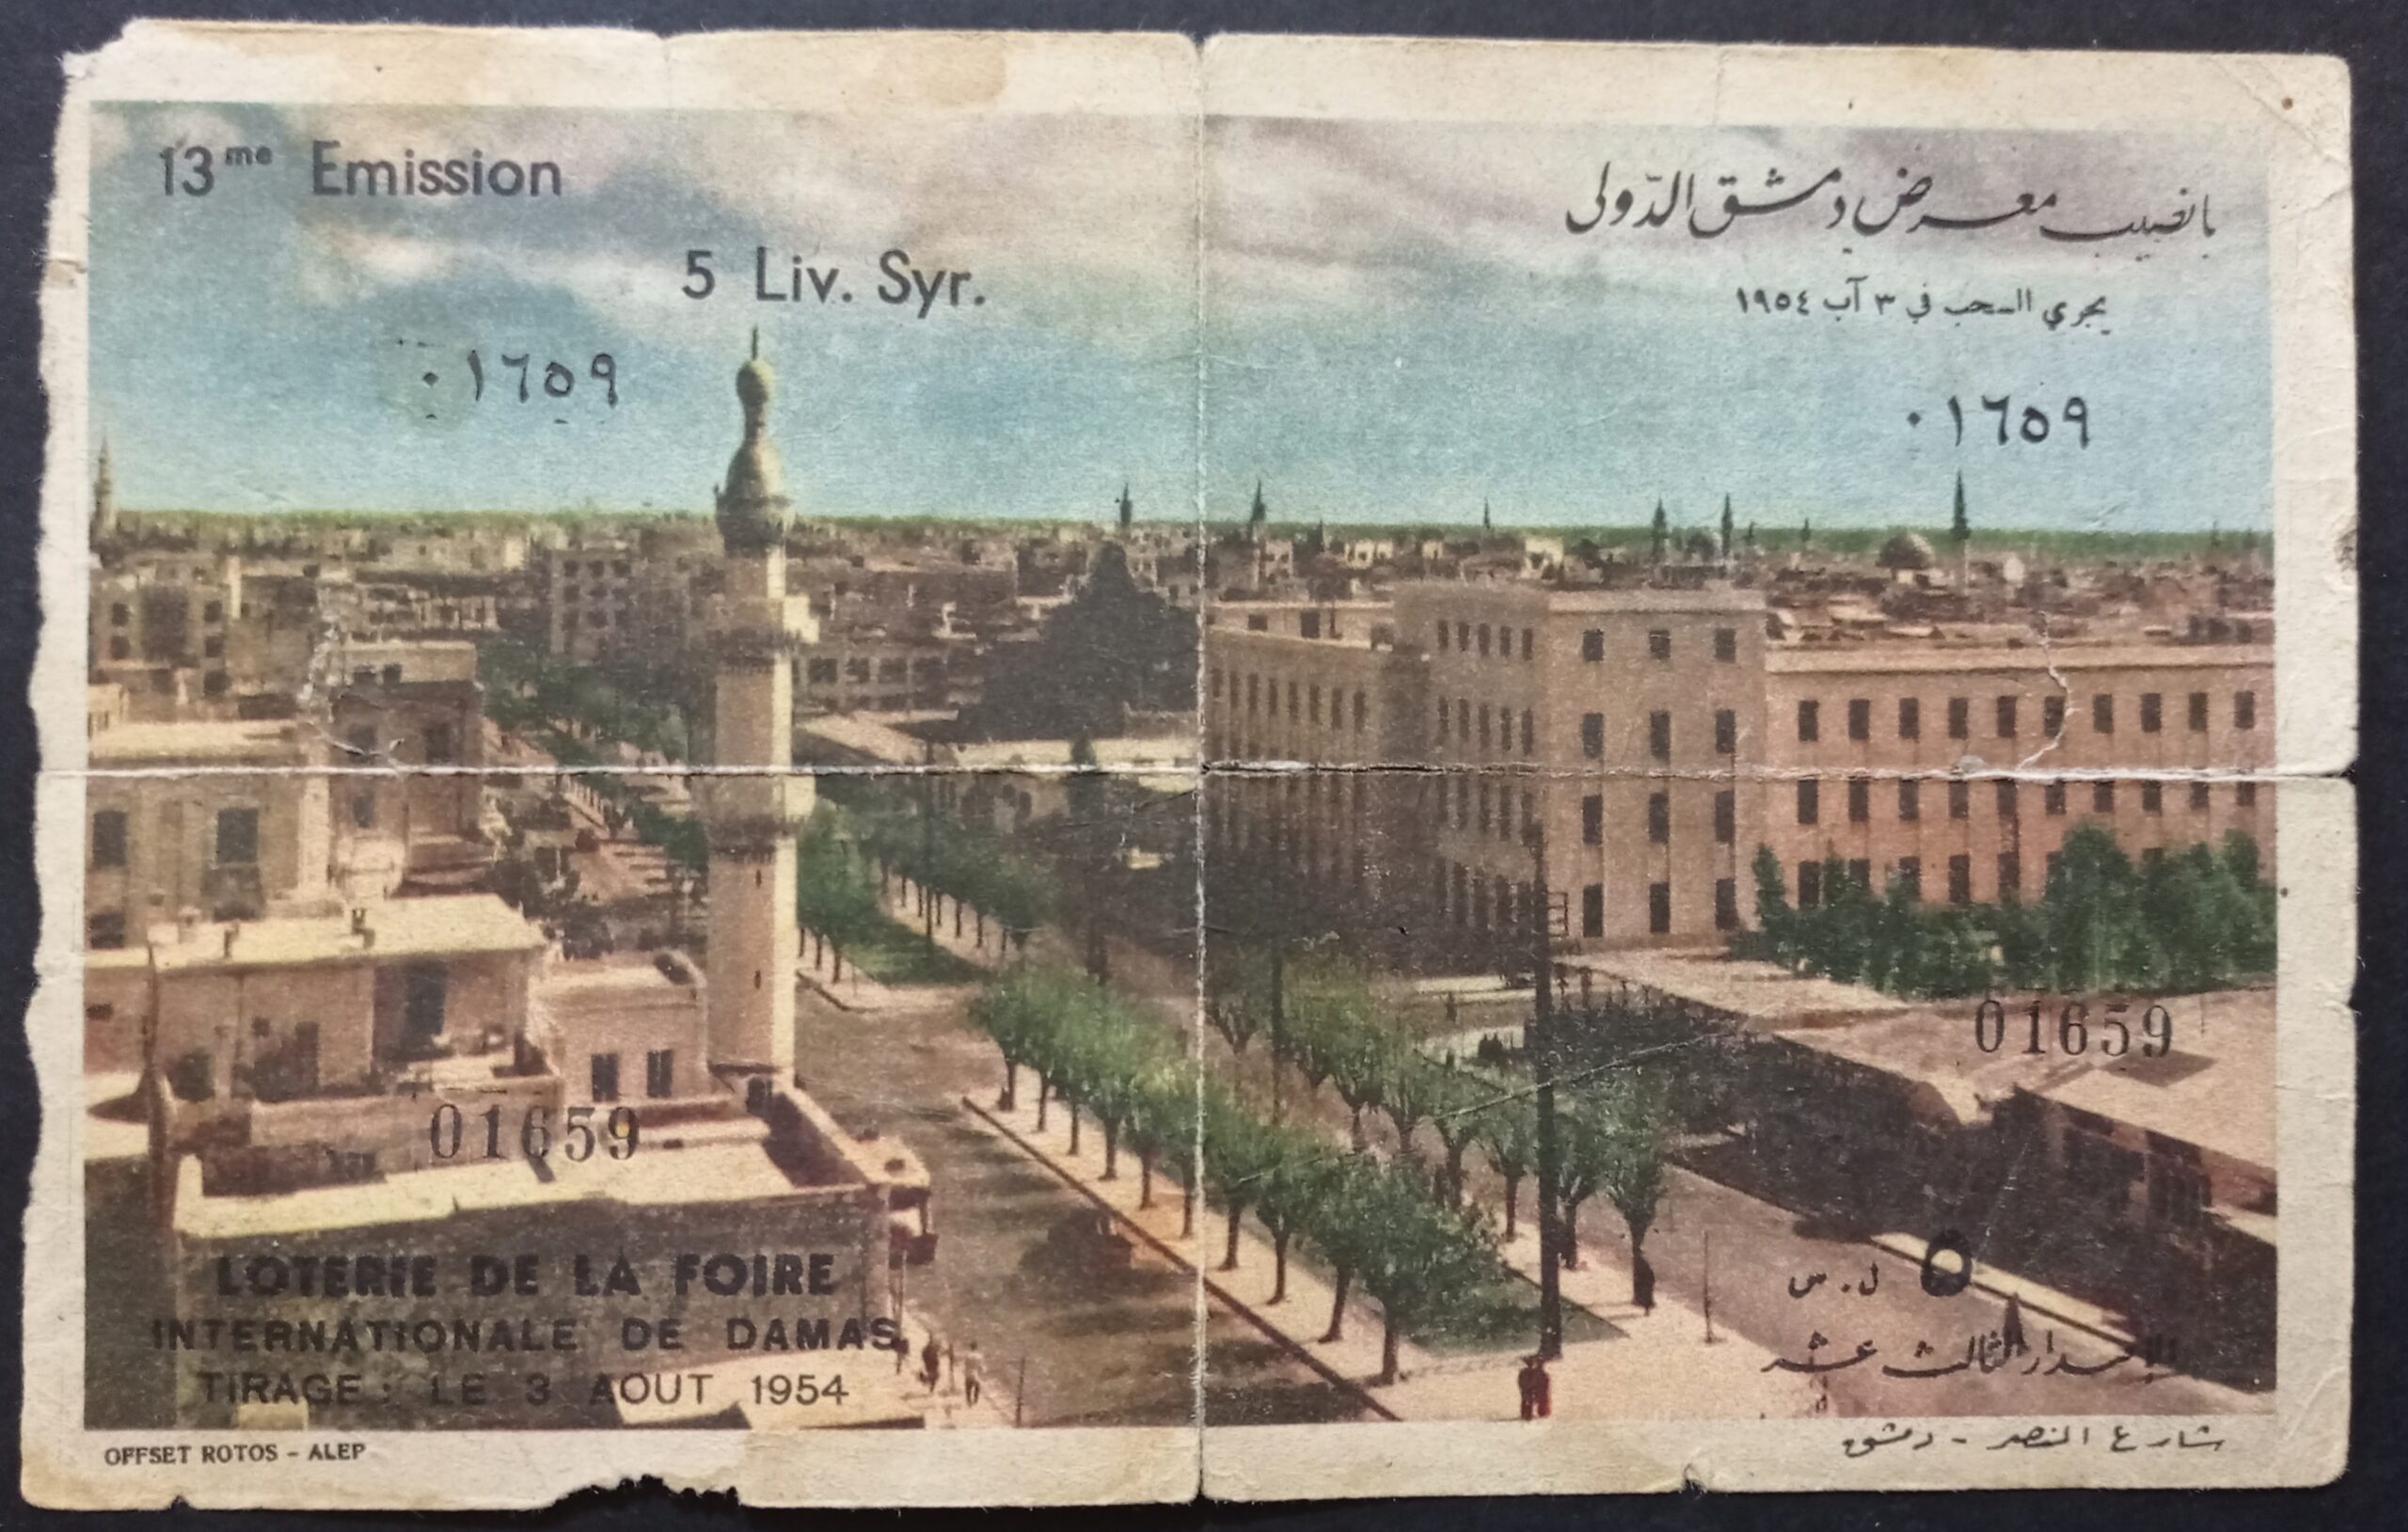 التاريخ السوري المعاصر - يانصيب معرض دمشق الدولي - الإصدار الثالث عشر عام 1954